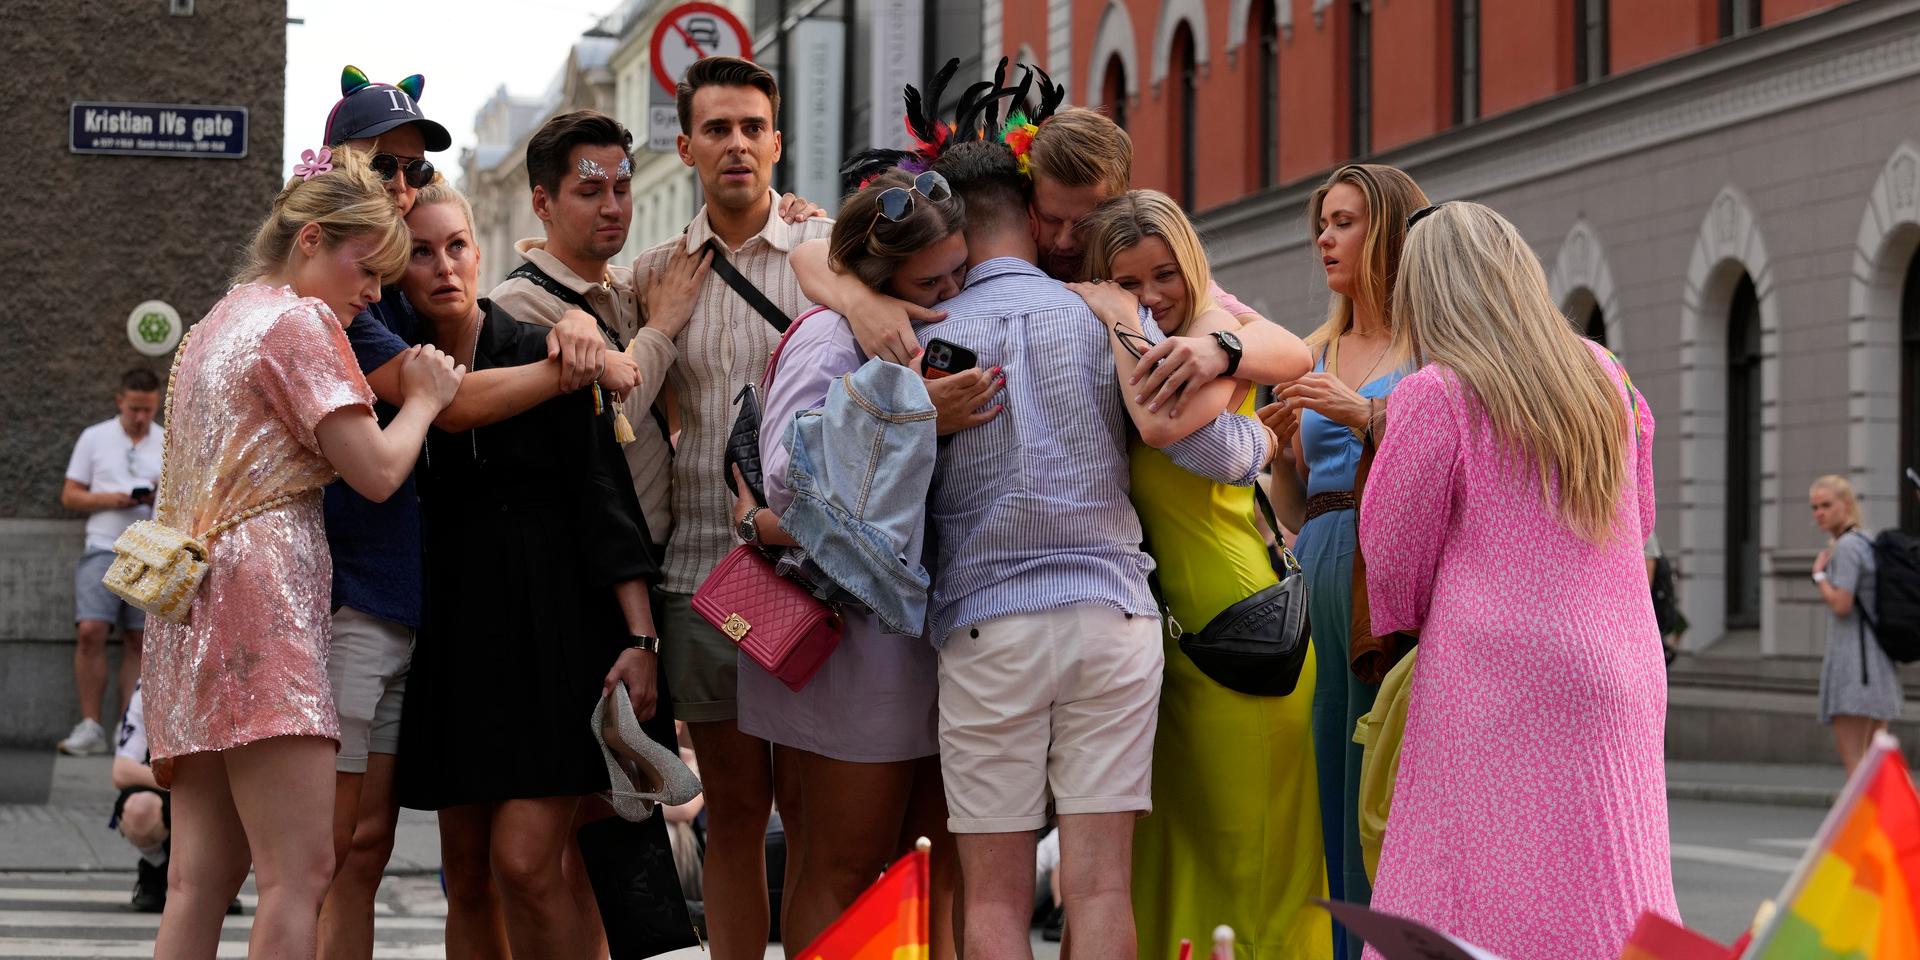 Sorg i Oslo efter skjutningen. På flera ställen syntes ställningstaganden från folk med regnbågsflaggor. (Sergei Grits/AP)